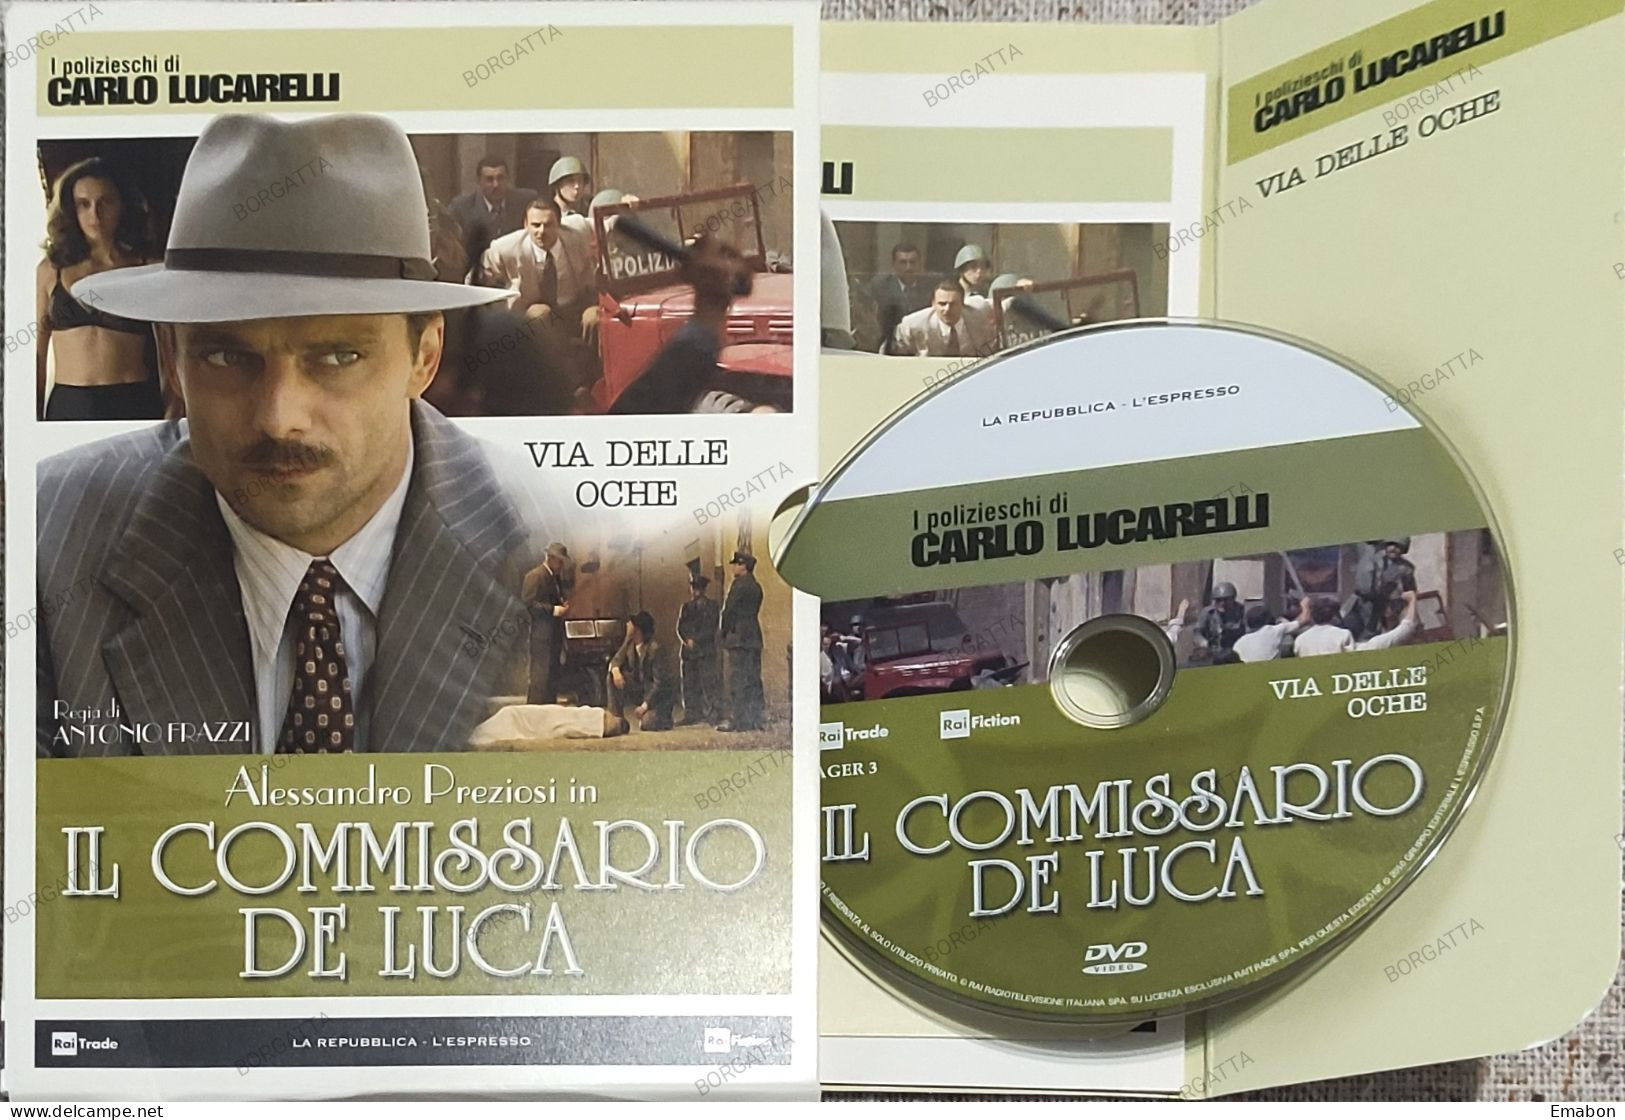 BORGATTA - POLICE -  Dvd " IL COMMISSARIO DE LUCA  VIA DELLE OCHE " ALESSANDRO PREZIOSI -  PAL 2- Usato In Buono Stato - Policiers